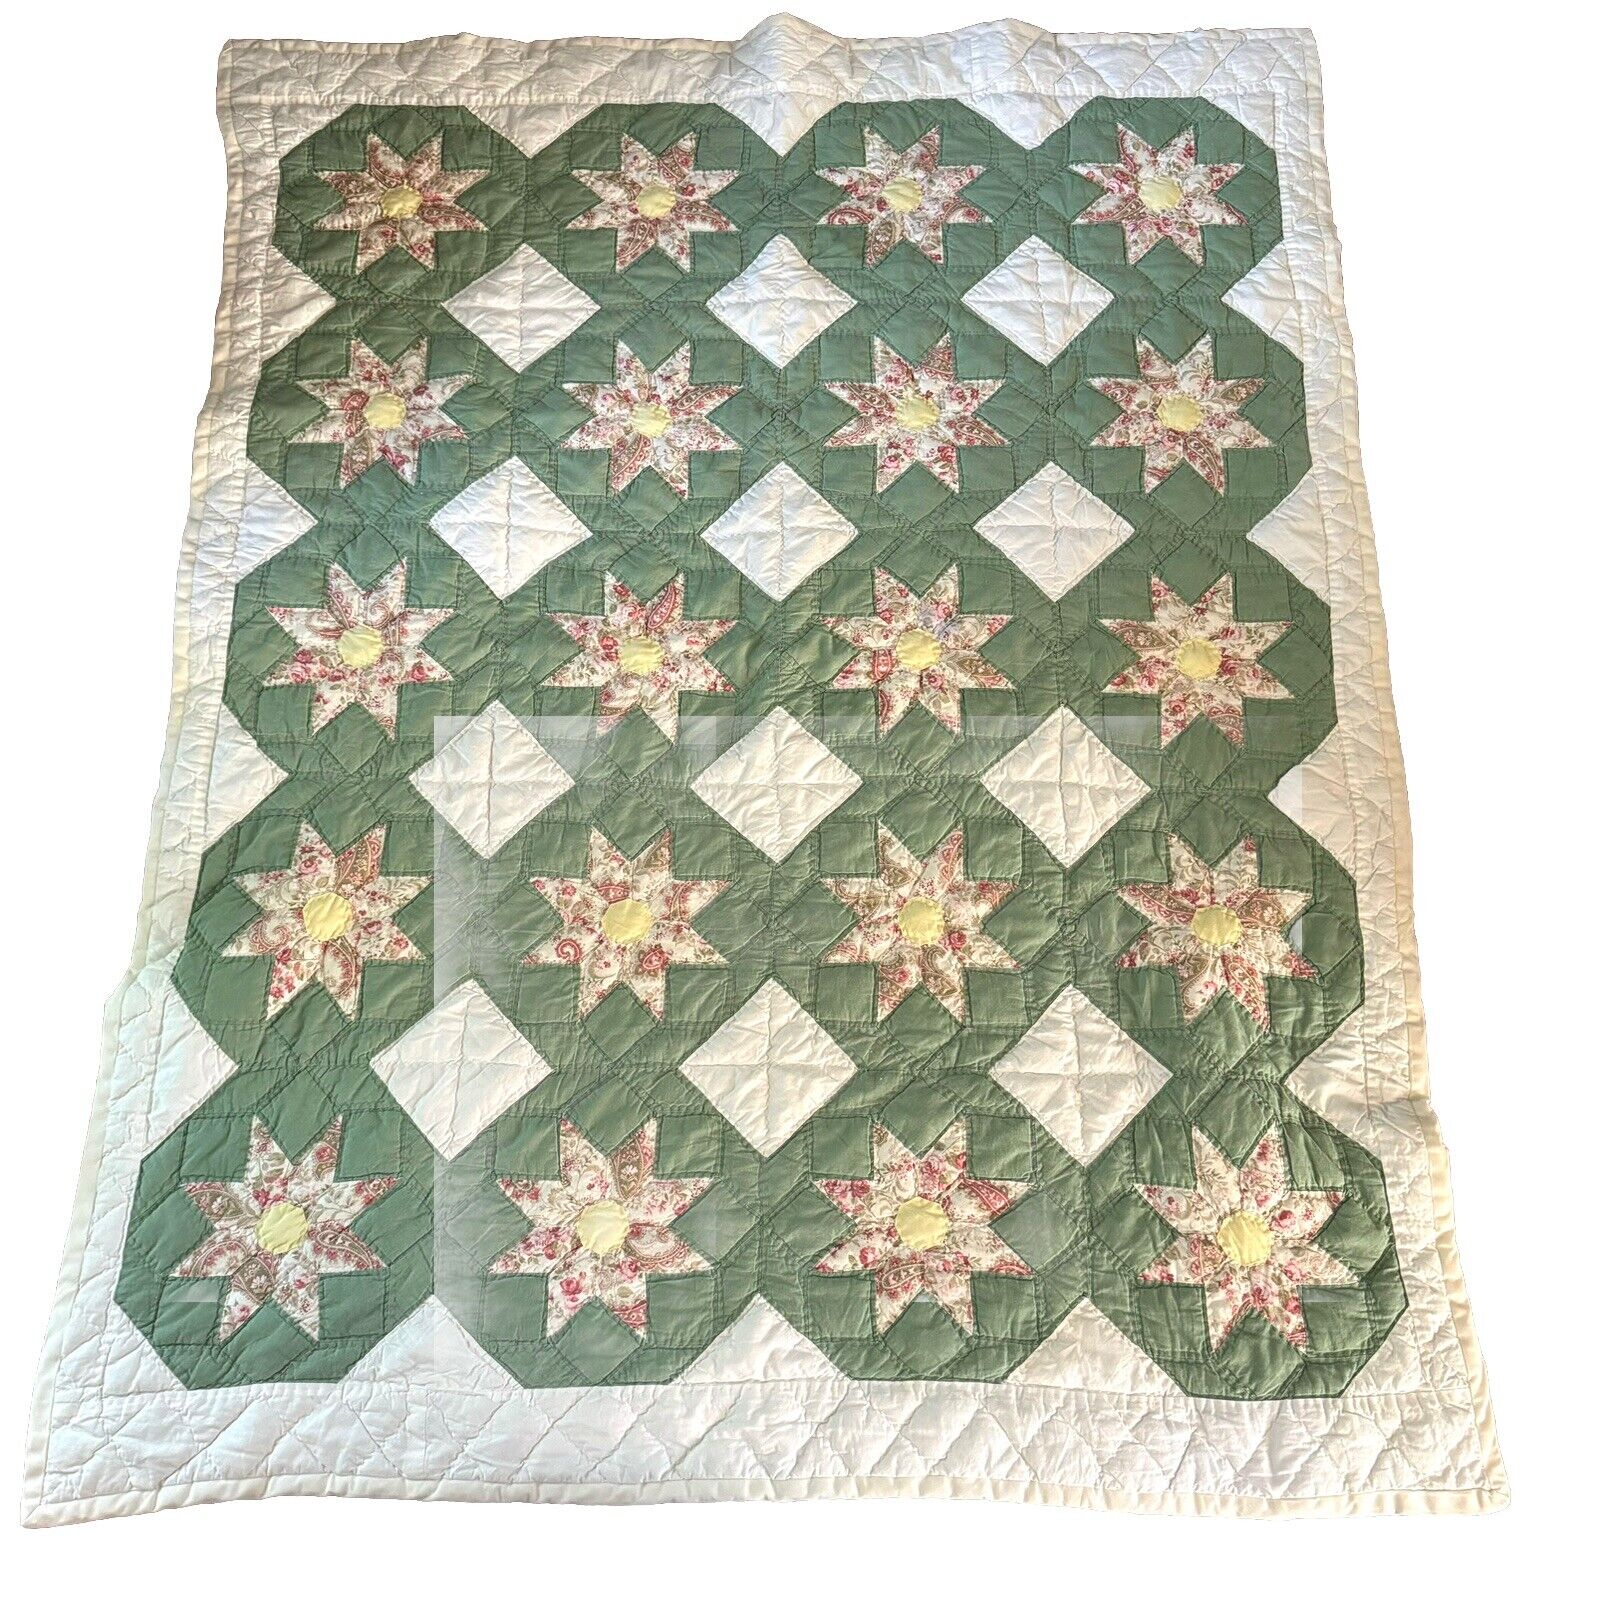 Vintage Patchwork 8 Point Star Quilt Handmade 100% Cotton 62” X 74” Green Pink